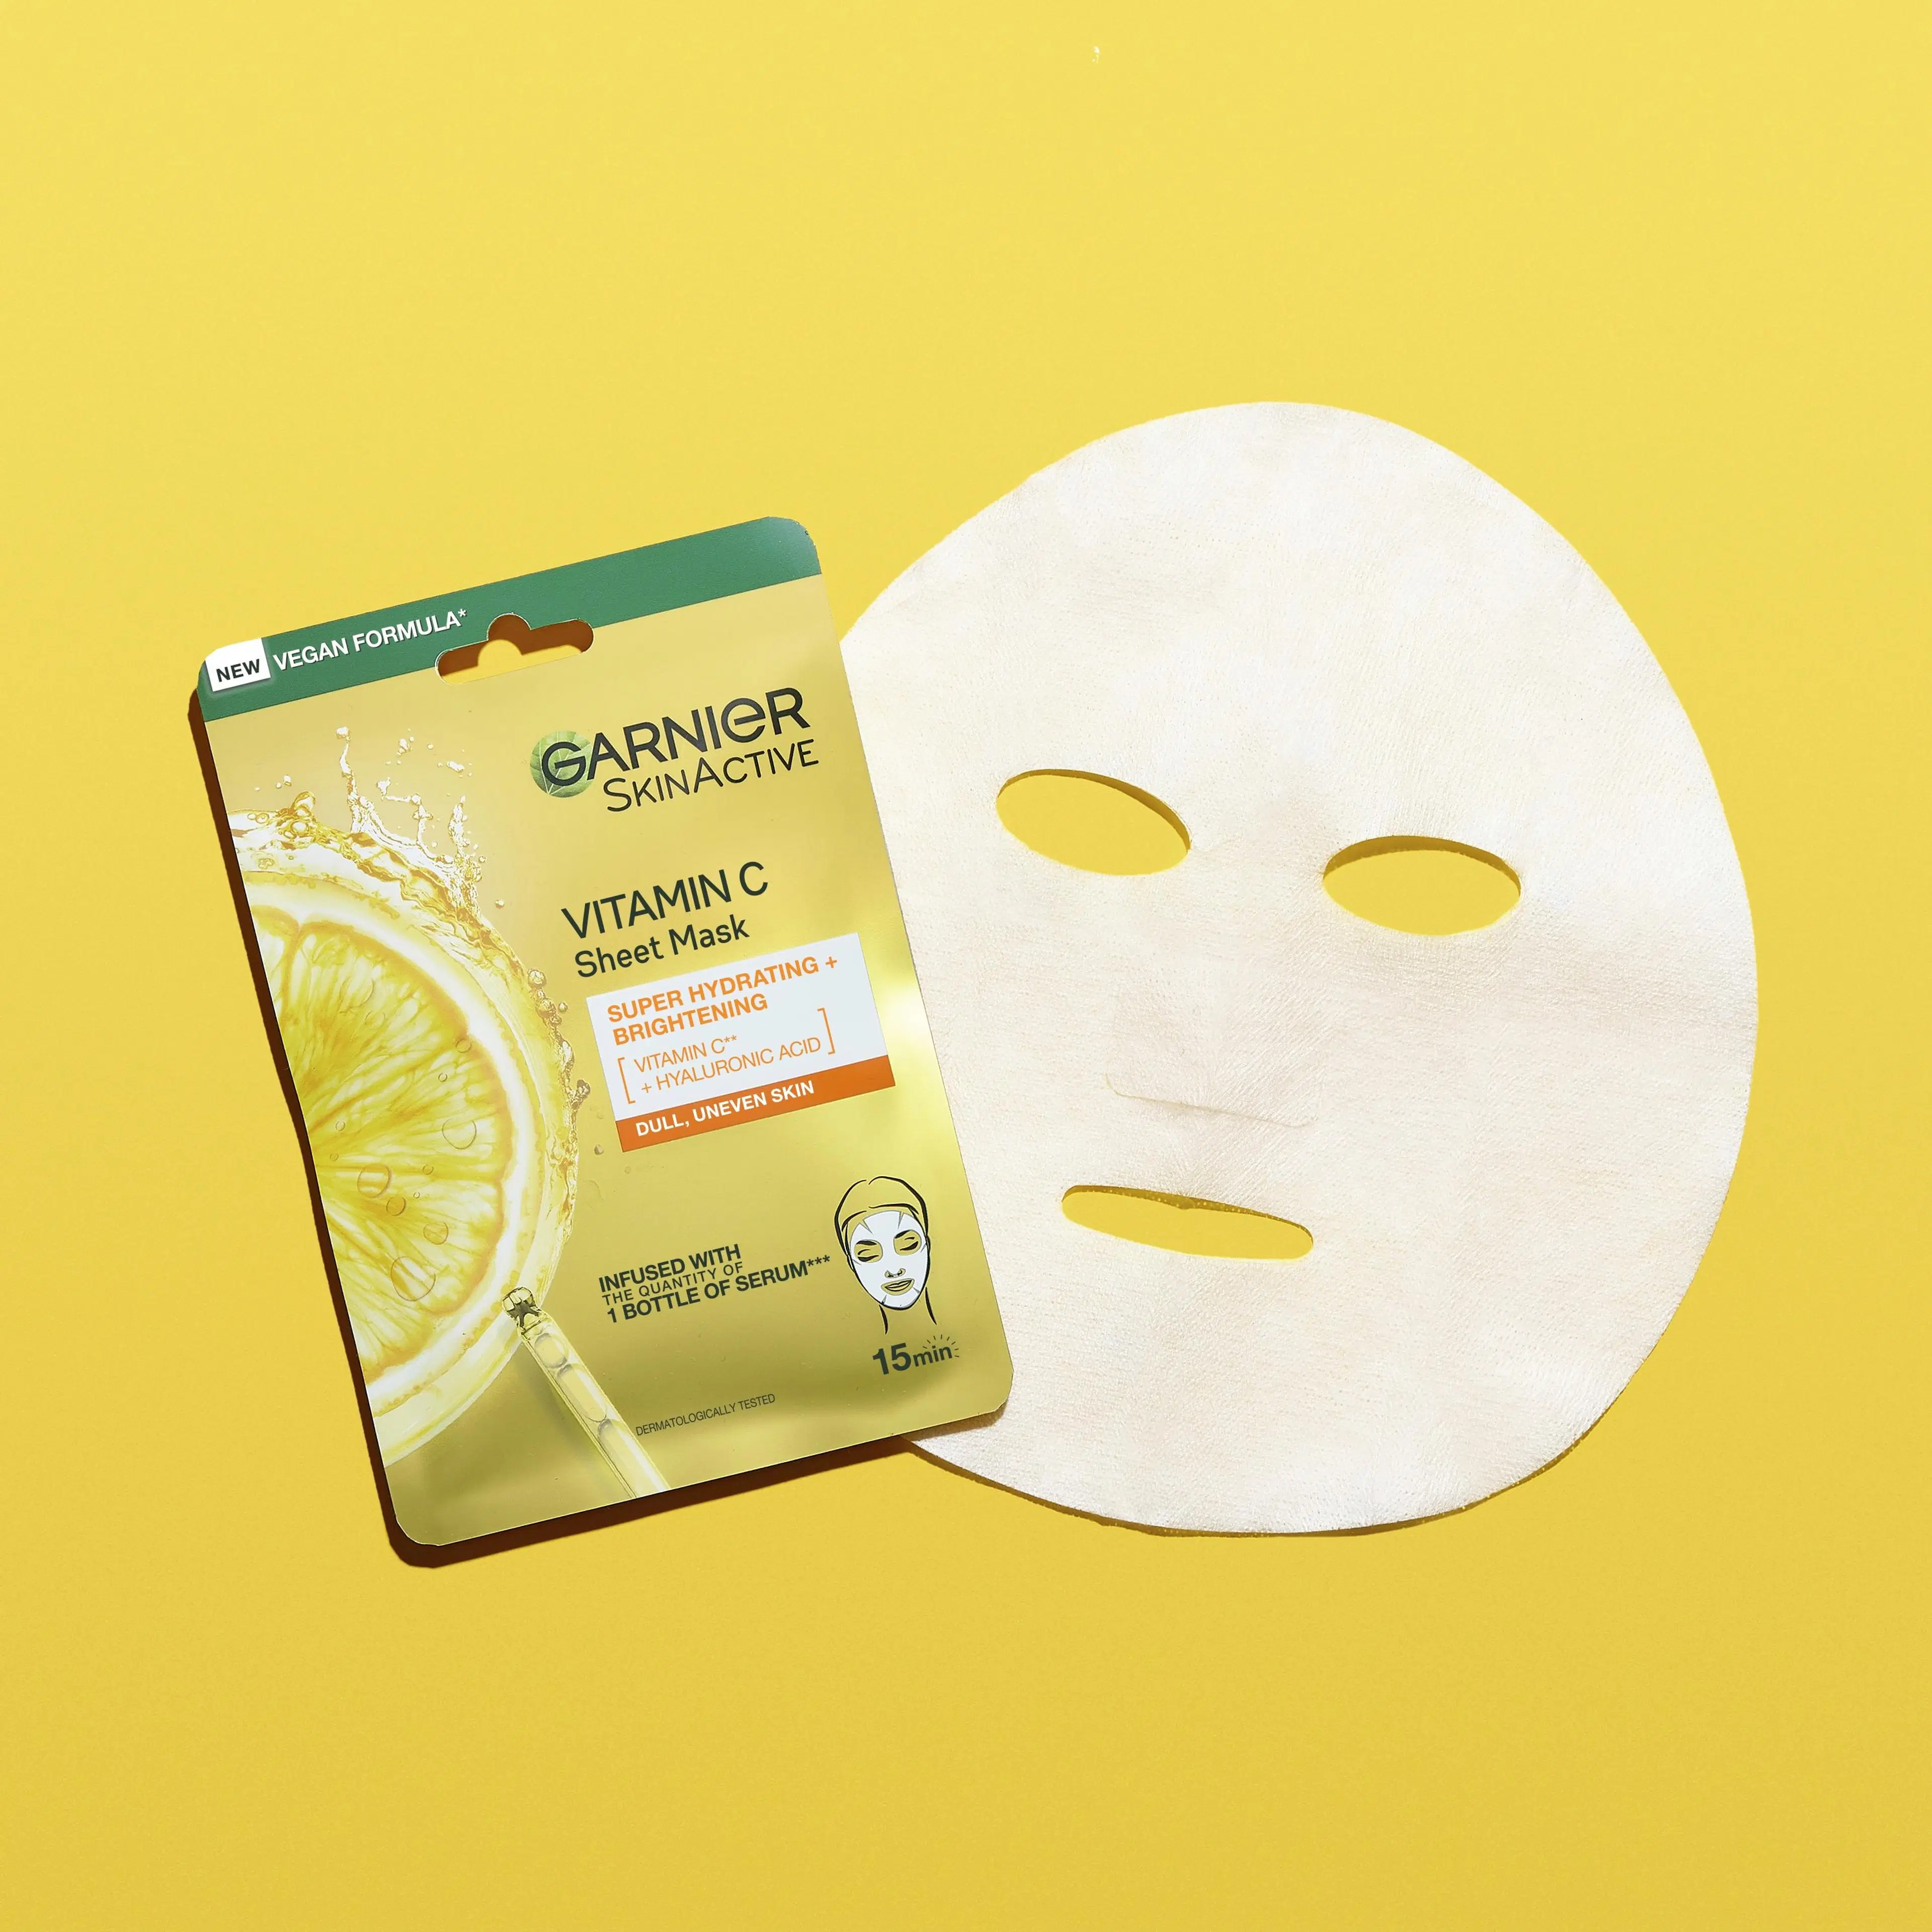 Garnier SkinActive Vitamin C Sheet Mask Super Hydrating + Brightening kosteuttava ja heleyttävä kangasnaamio 28 g